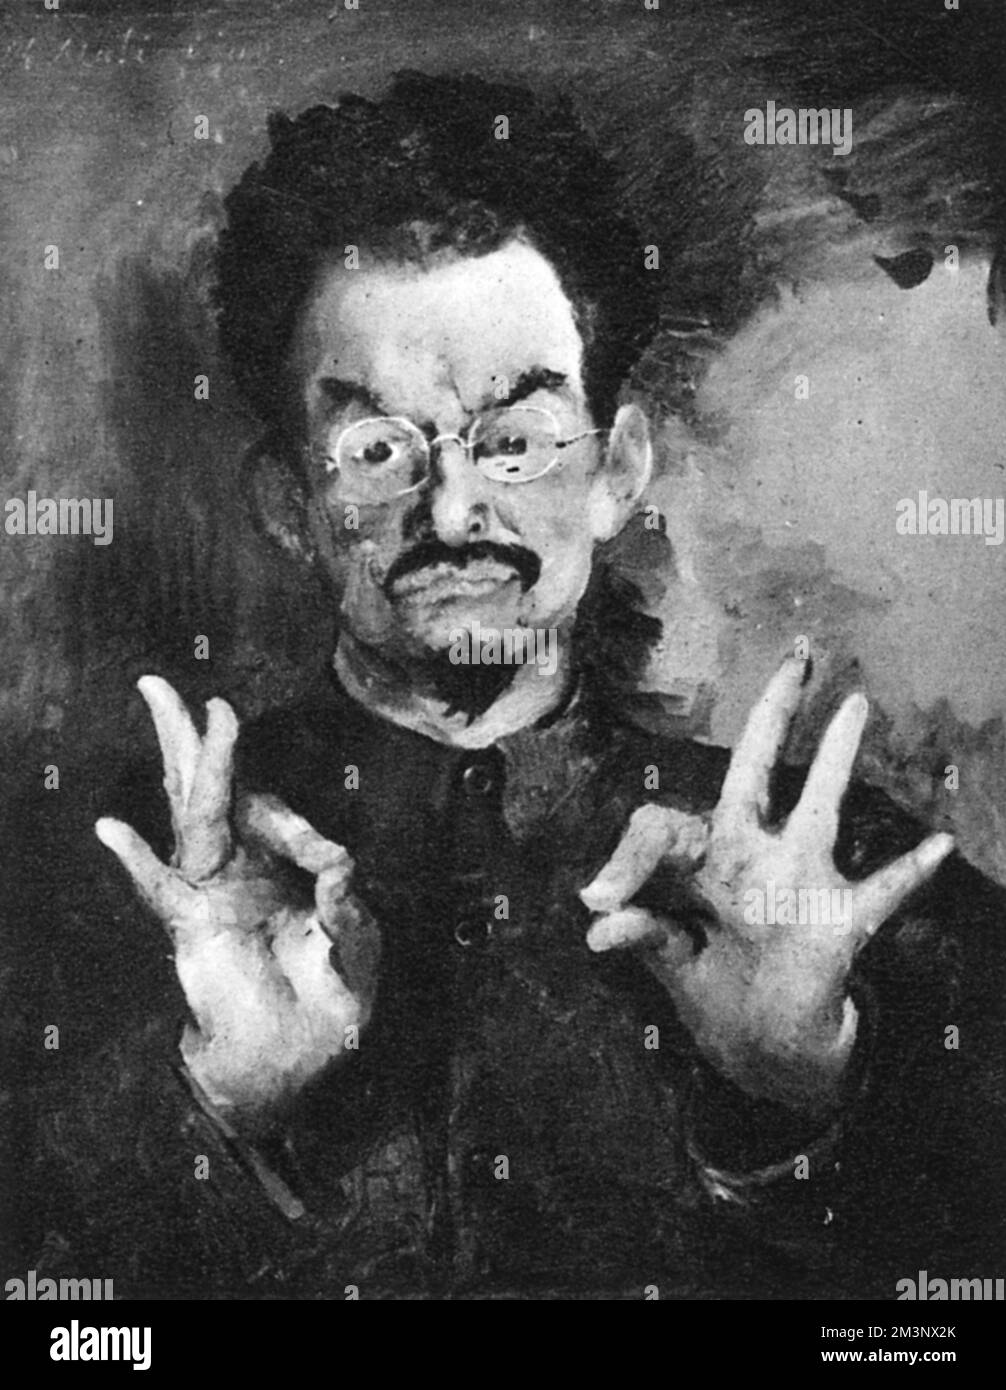 Eine schwarz-weiße Reproduktion eines Porträts von Leon Trotsky des russischen Malers Phillipe Maliavine (Filipp Malyavin) (1869-1940). Dies war eine von mehreren Zeichnungen und Gemälden von Maliavine, die 1935 in den New Burlington Galleries in London ausgestellt wurden Stockfoto